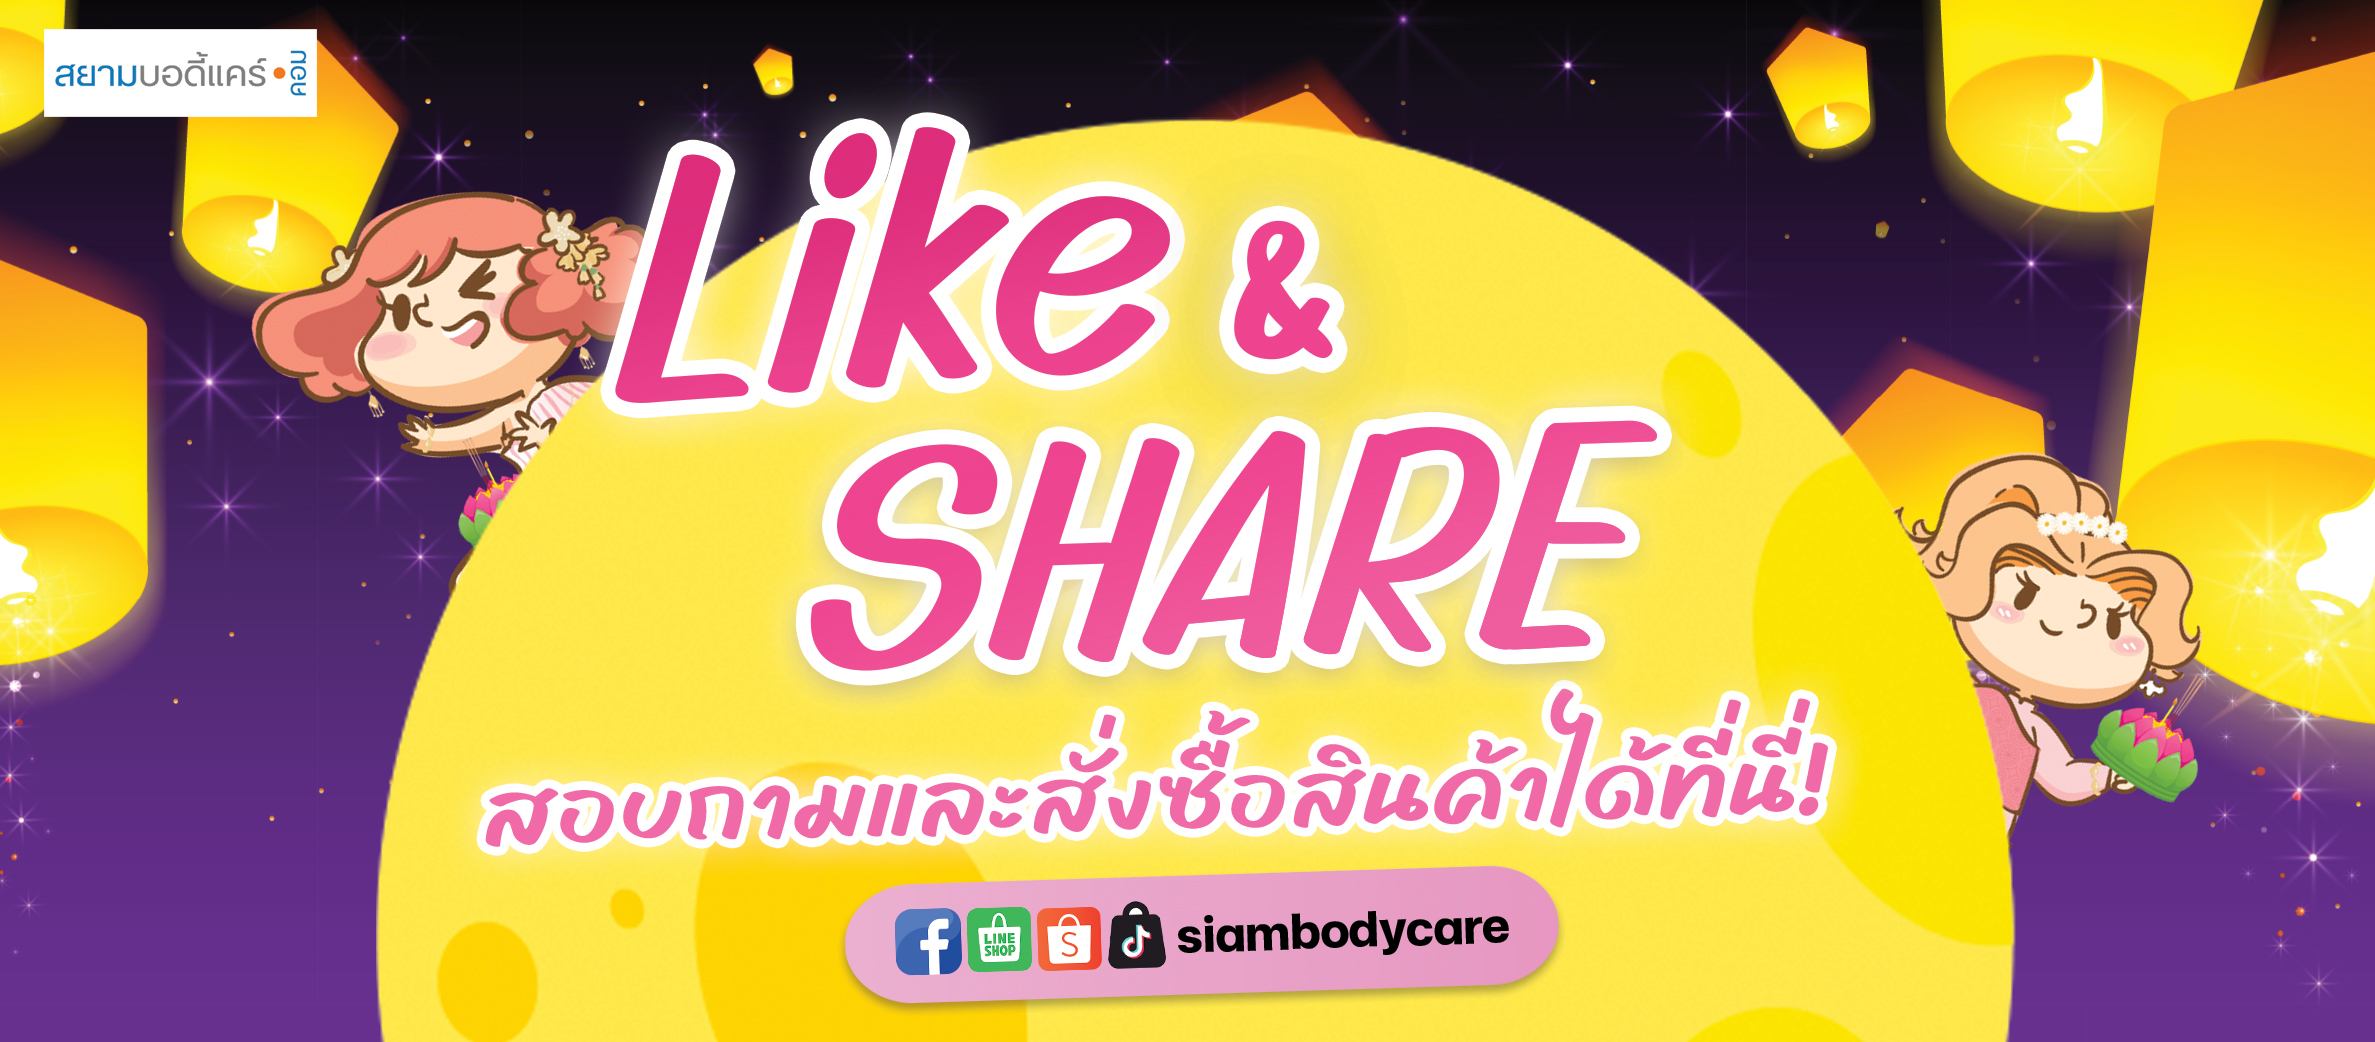 facebook Like Share ลด แลก แจก แถม สยามบอดี้แคร์